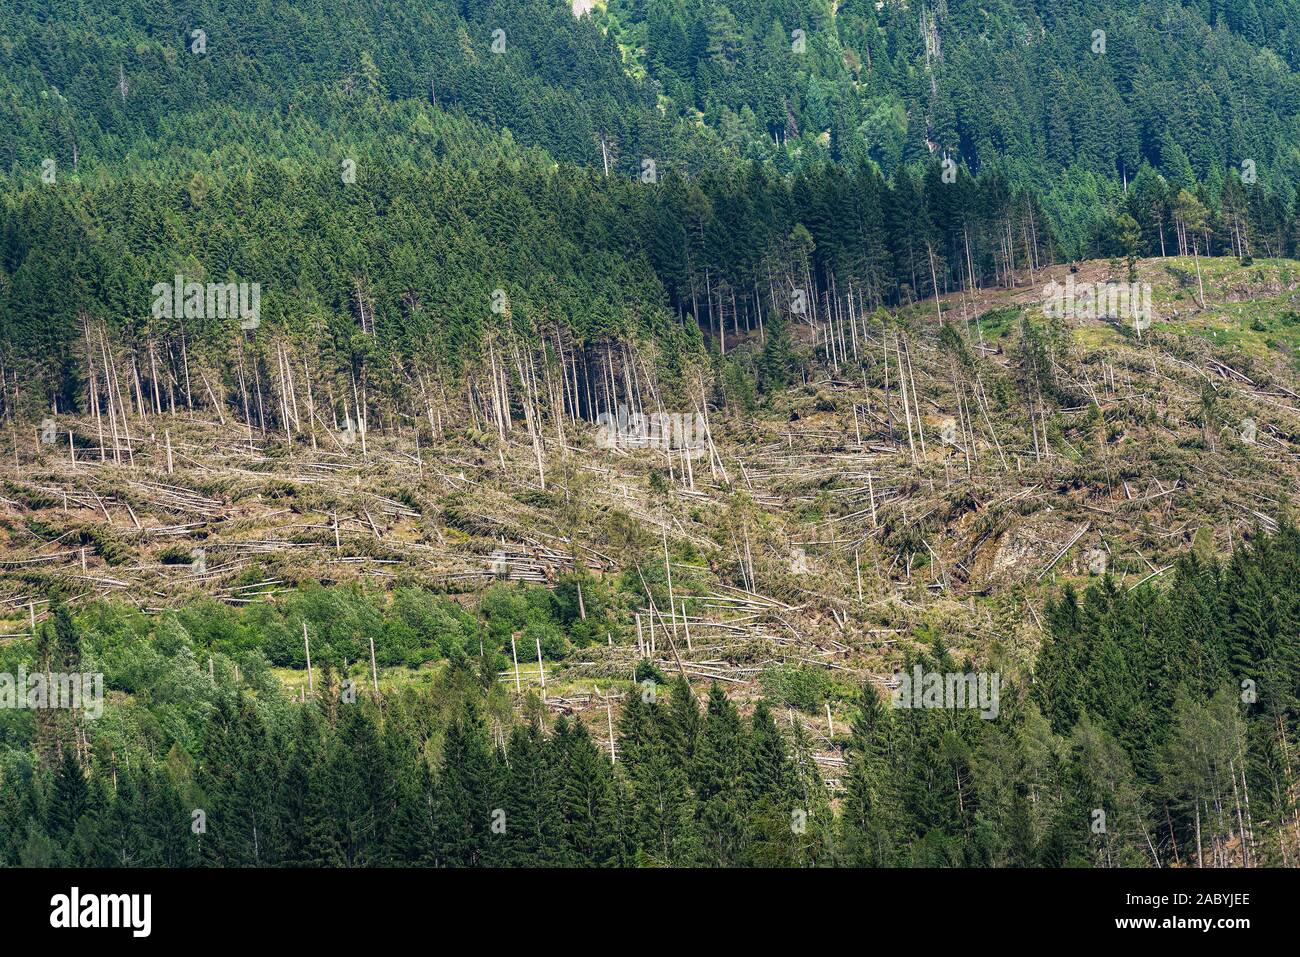 Wald mit Tausenden von Bäumen aufgrund der sehr starken Wind gefallen, November 2018, Baselga di Pine. Naturkatastrophe in Trentino Alto Adige, Italien Stockfoto